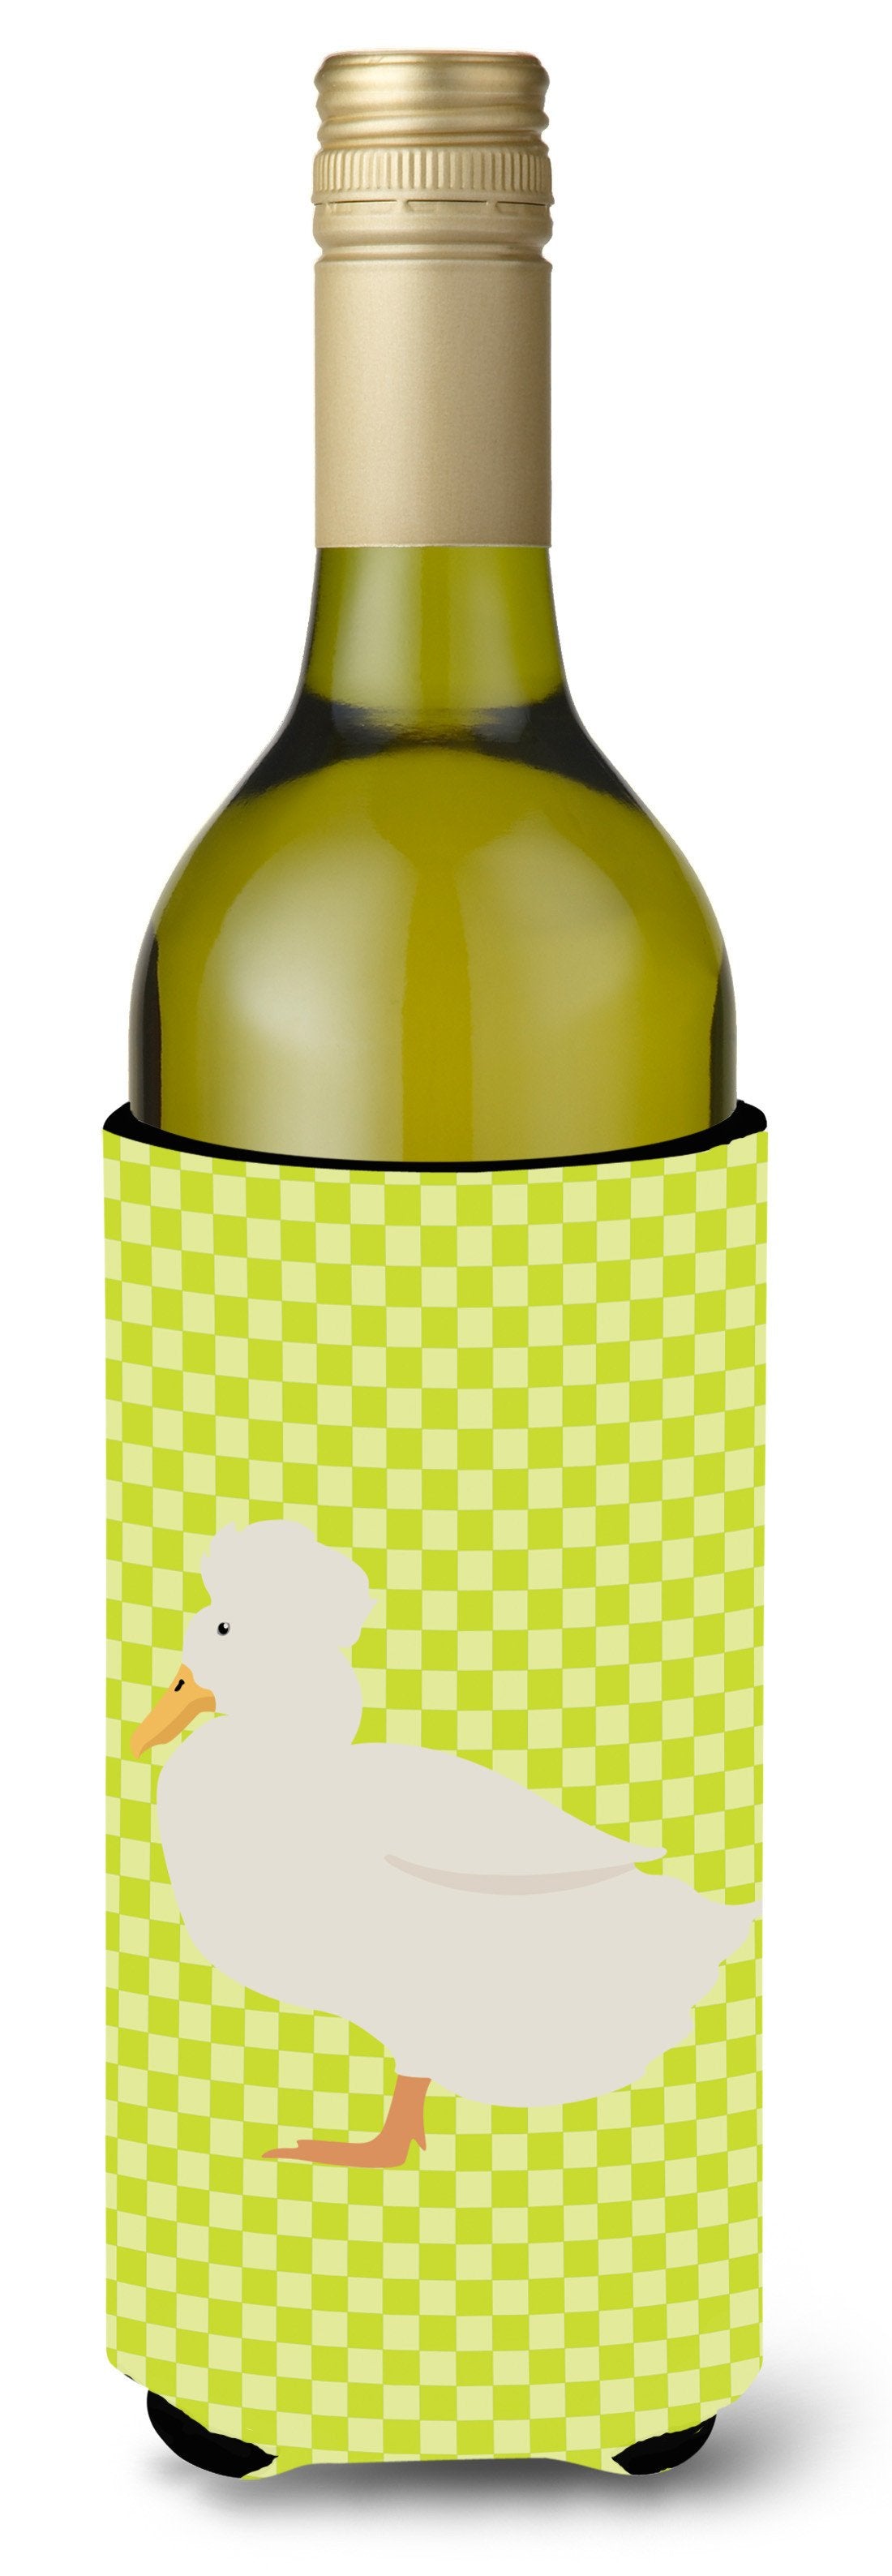 Crested Duck Green Wine Bottle Beverge Insulator Hugger BB7683LITERK by Caroline's Treasures